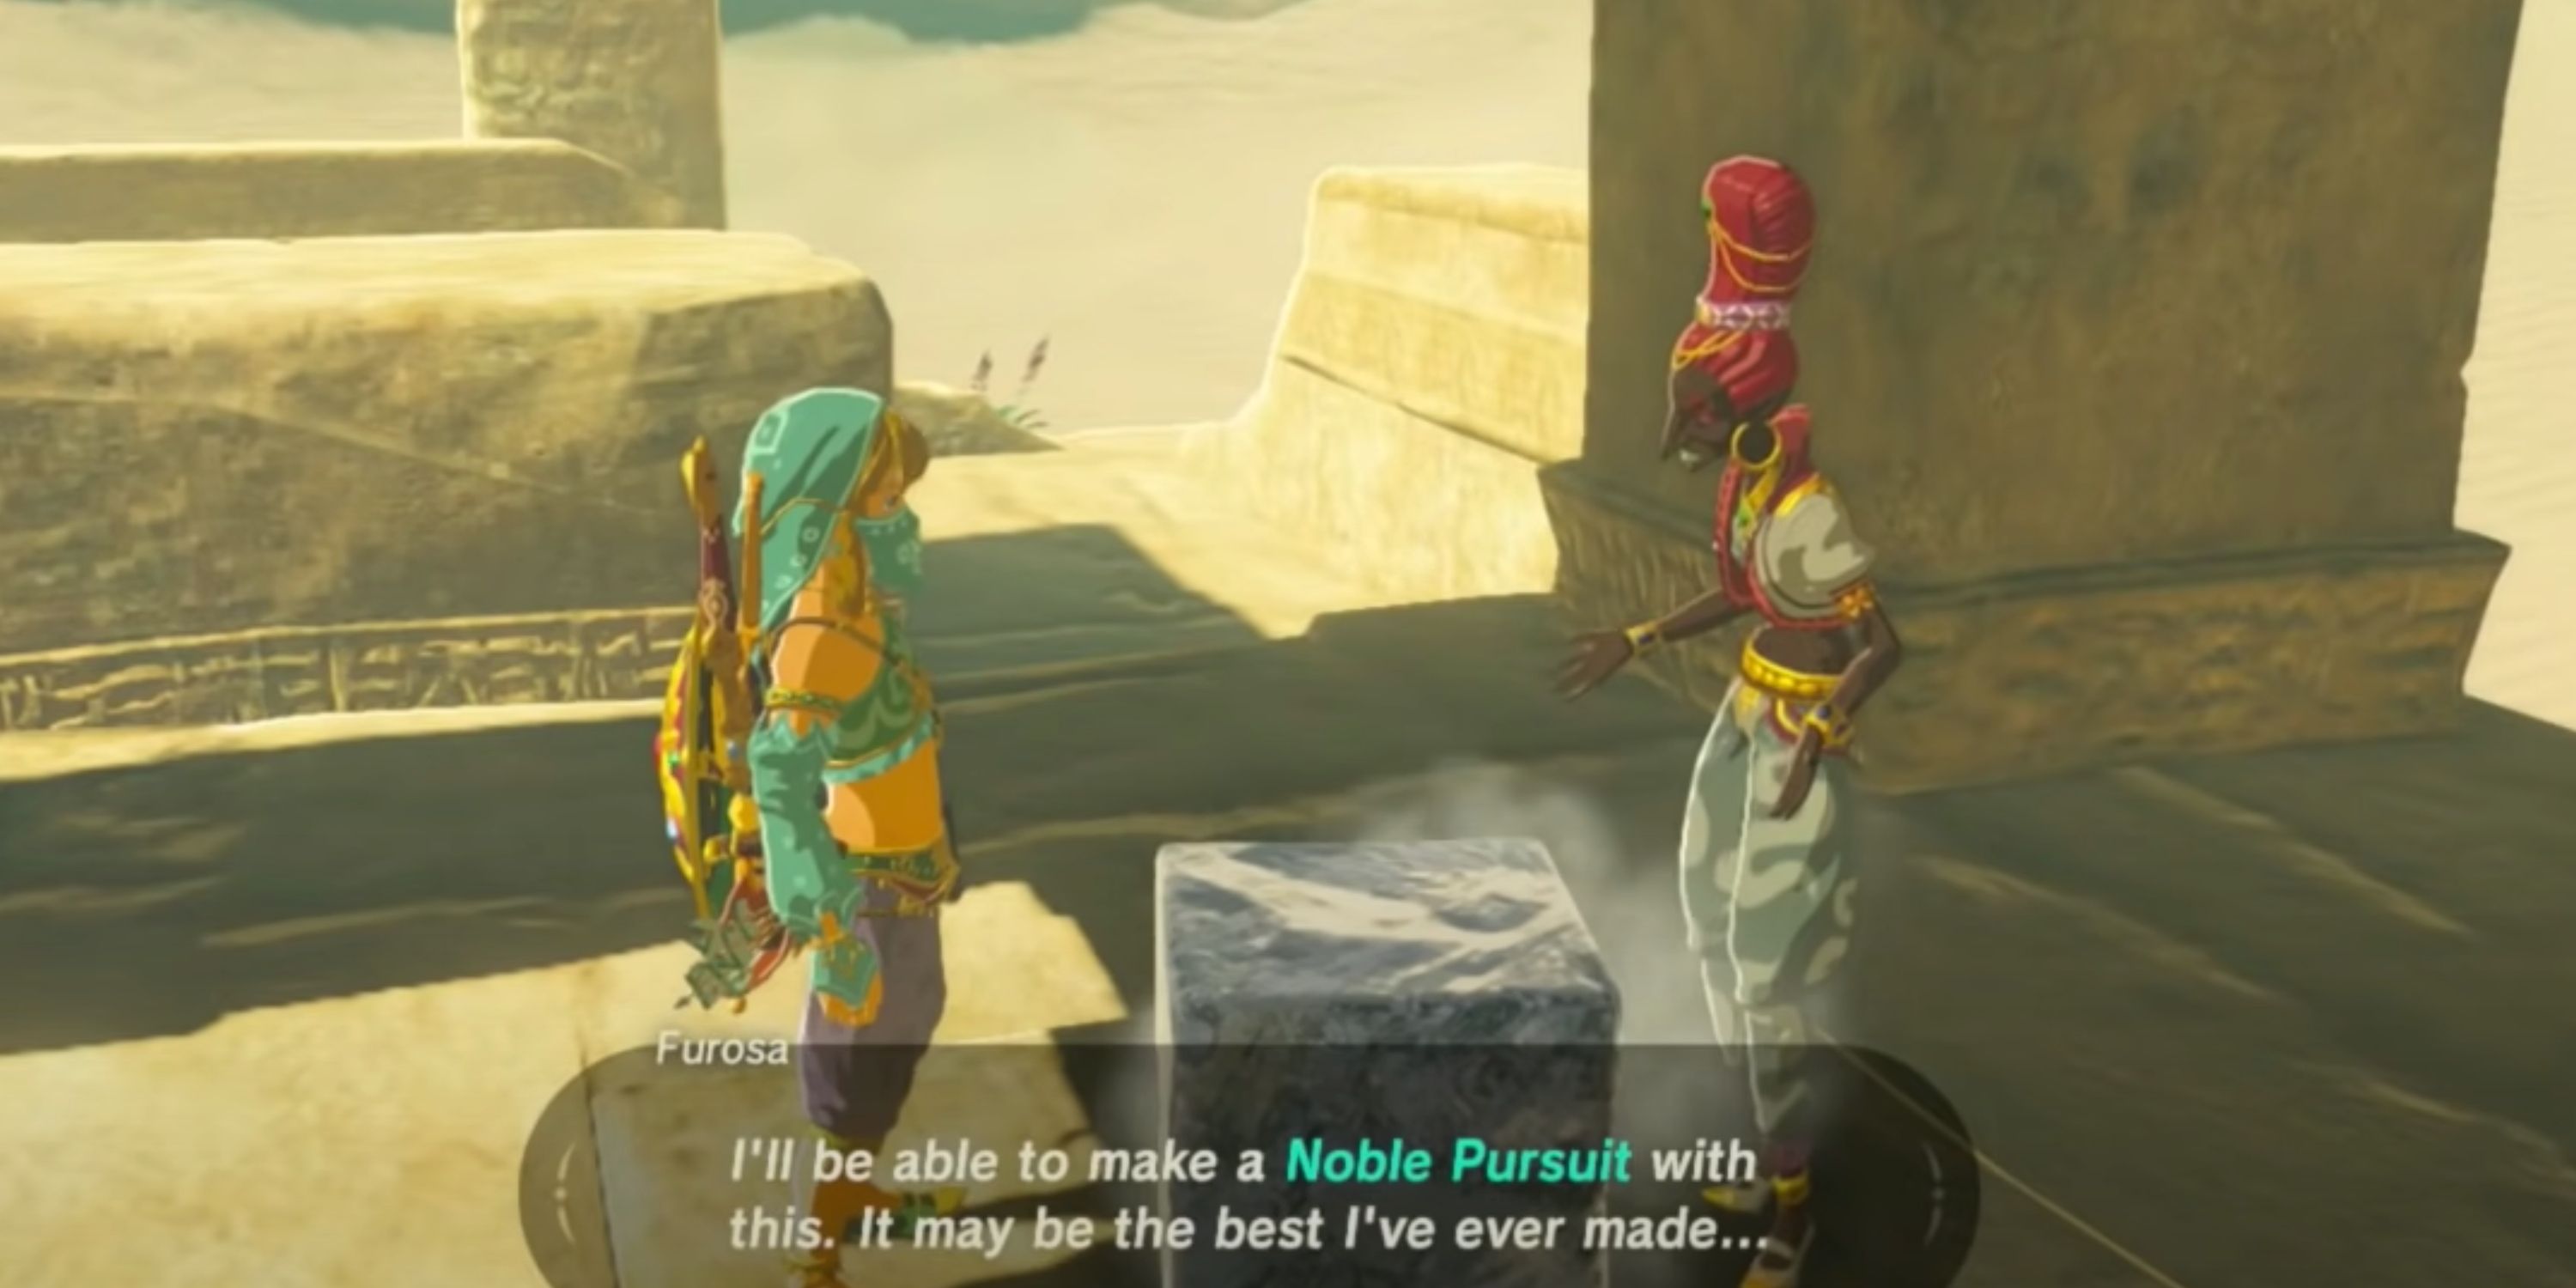 Zelda BOTW Noble Pursuit for Pokki Delivering Ice to Furosa